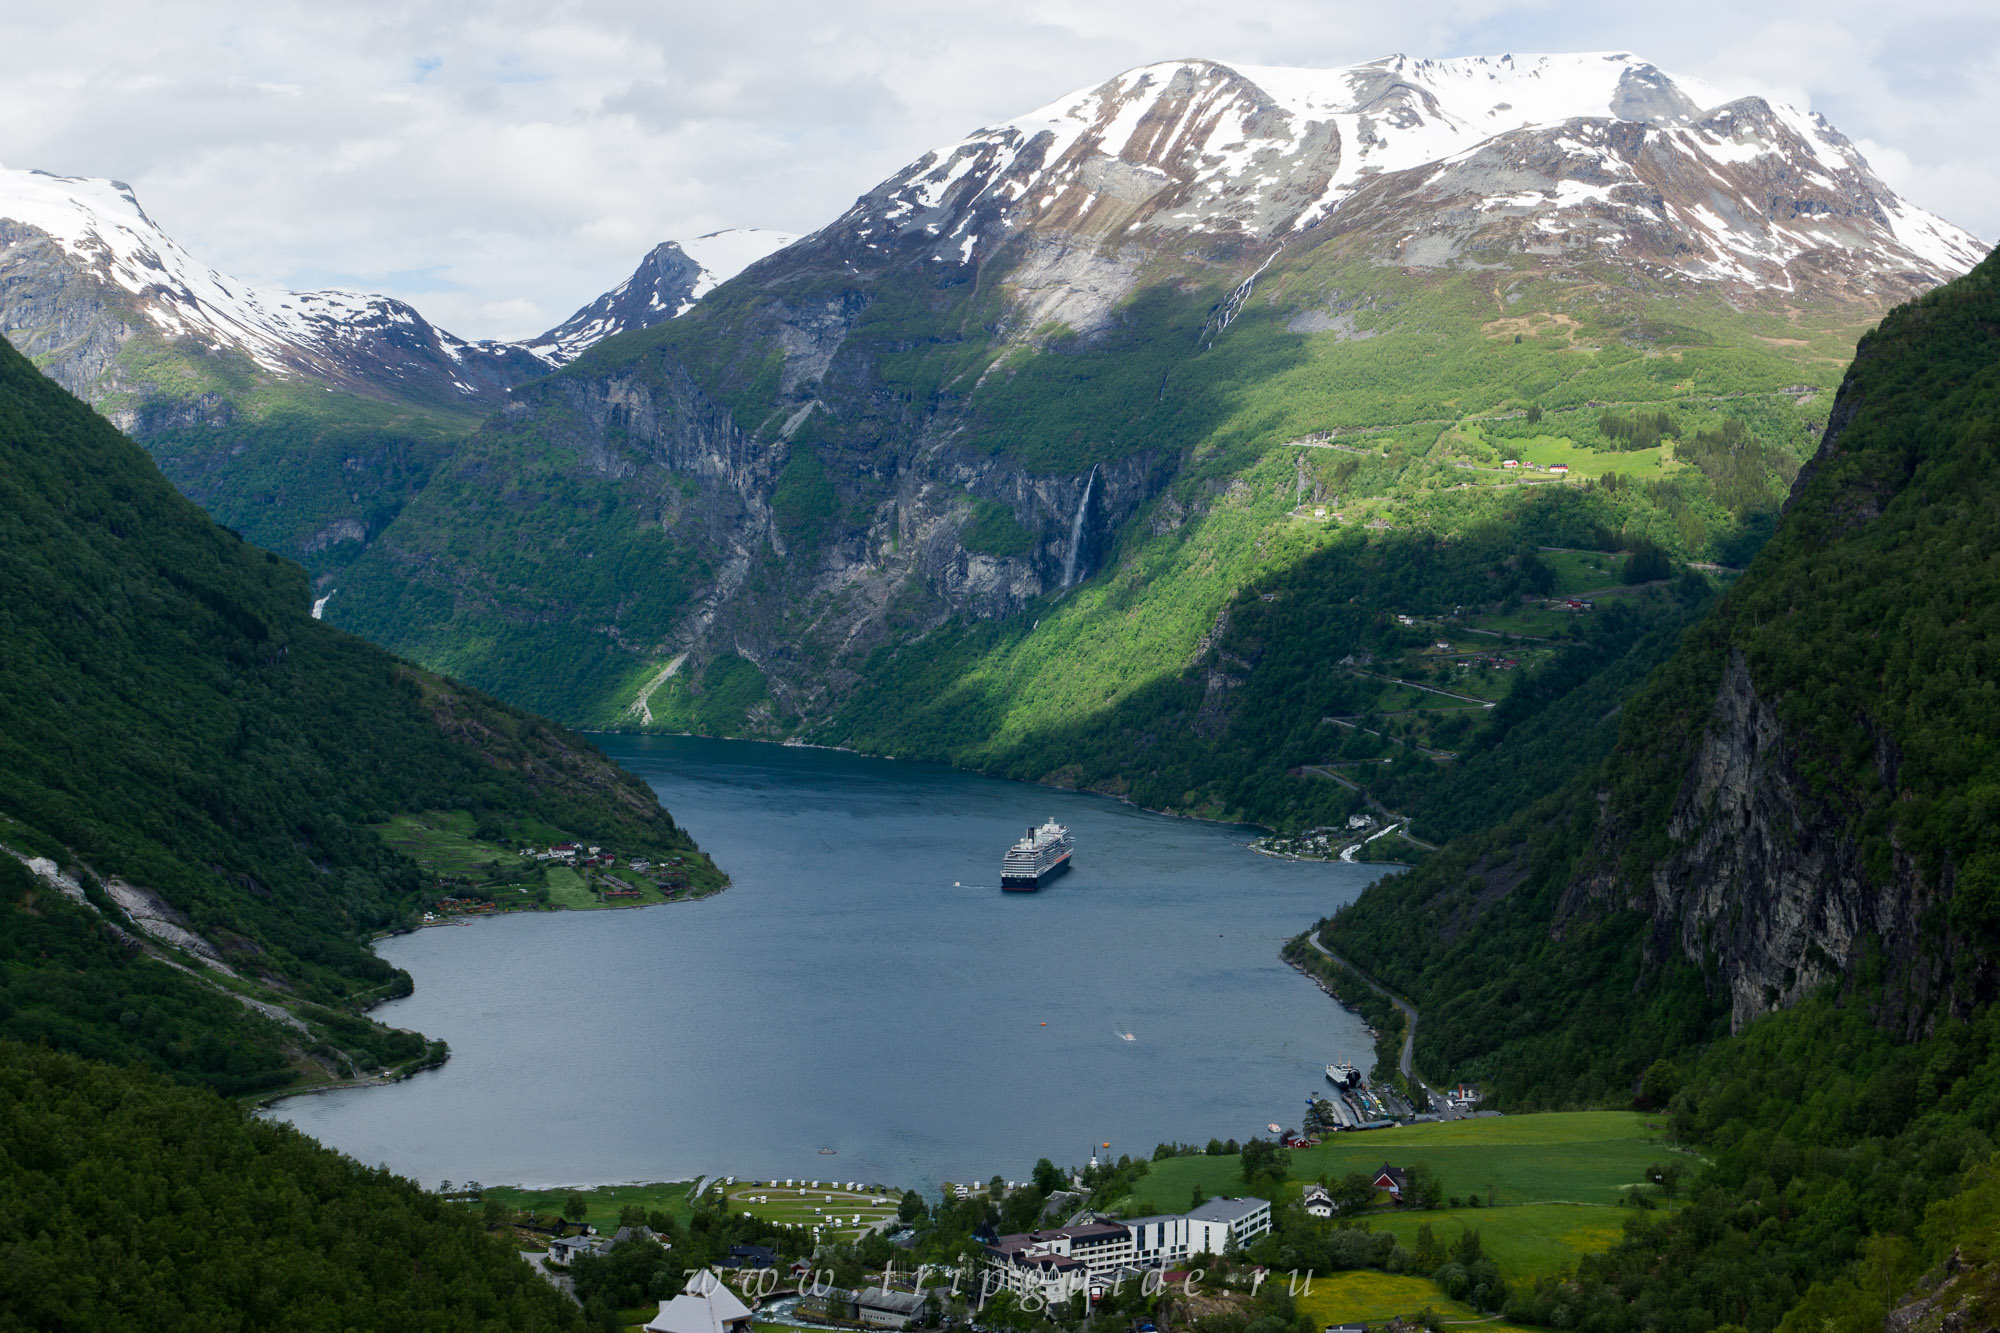 Какая страна имеет знаменитую природную достопримечательность фьорды. Далснибба Норвегия. Орлиная дорога Гейрангер Норвегия. Норвегия достопримечатель. Смотровые площадки Норвегии.